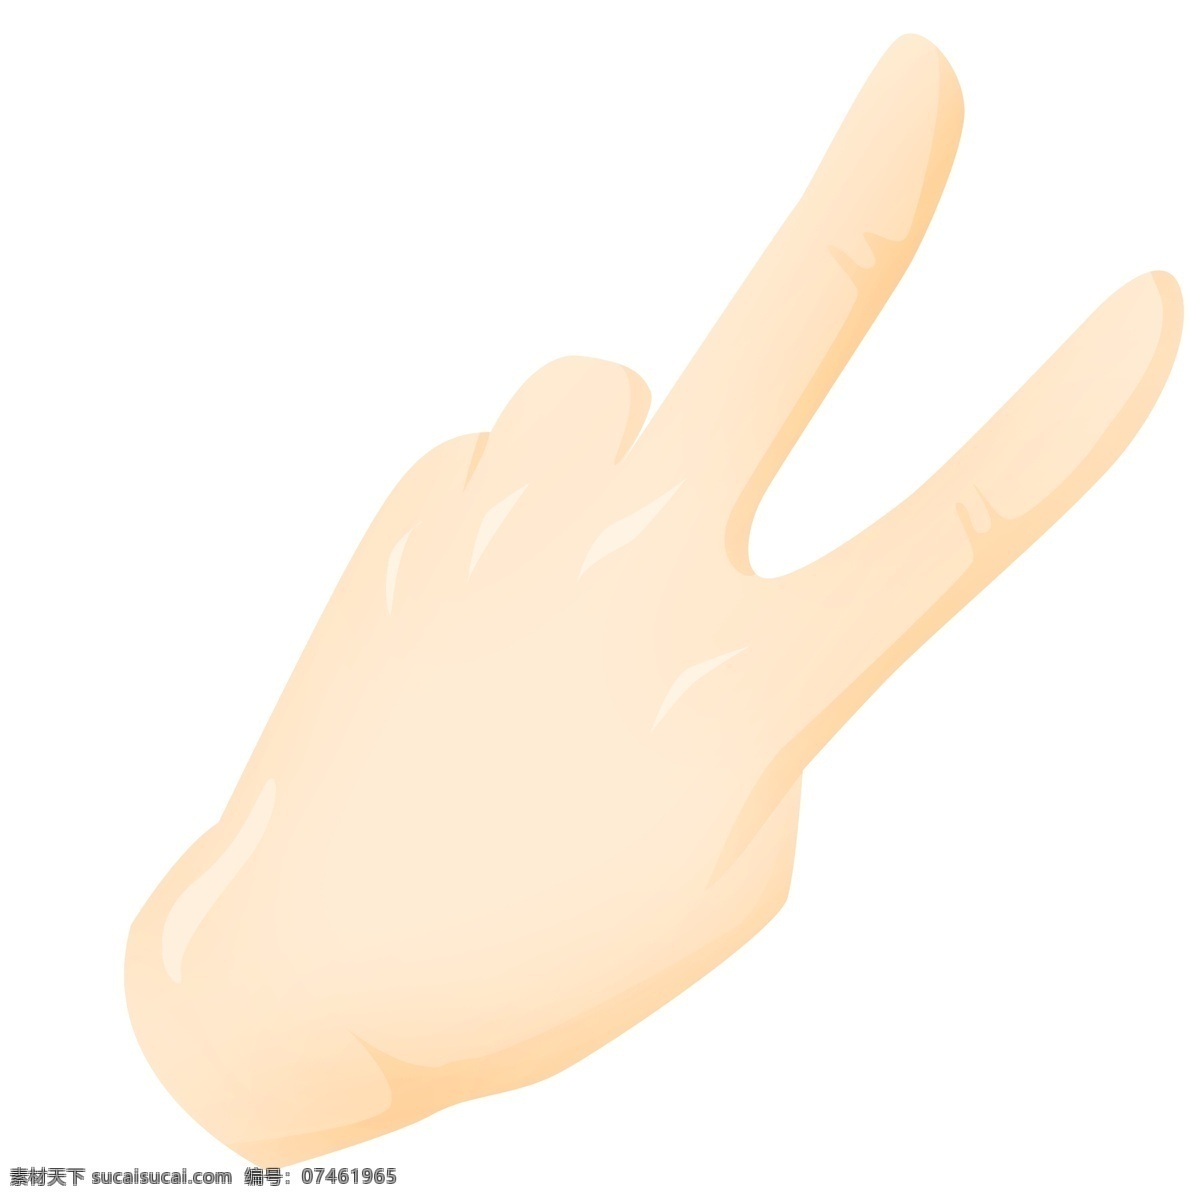 数字 手势 插画 数字2的手势 卡通插画 手势的插画 肢体语言 哑语 摆姿势 手语 好看的手势